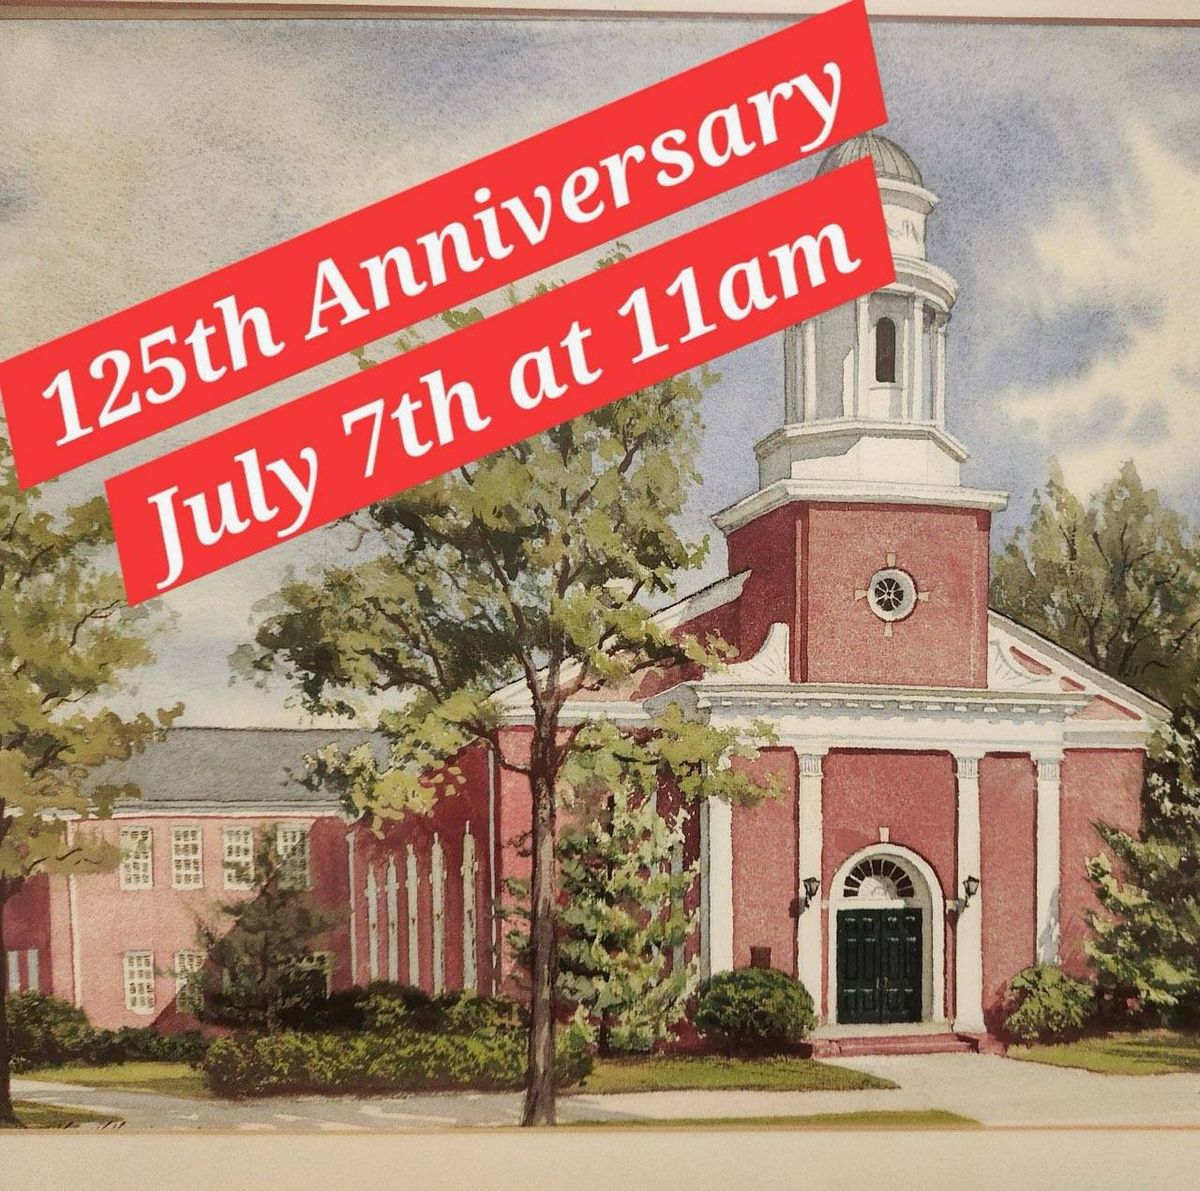 125th Church Anniversary